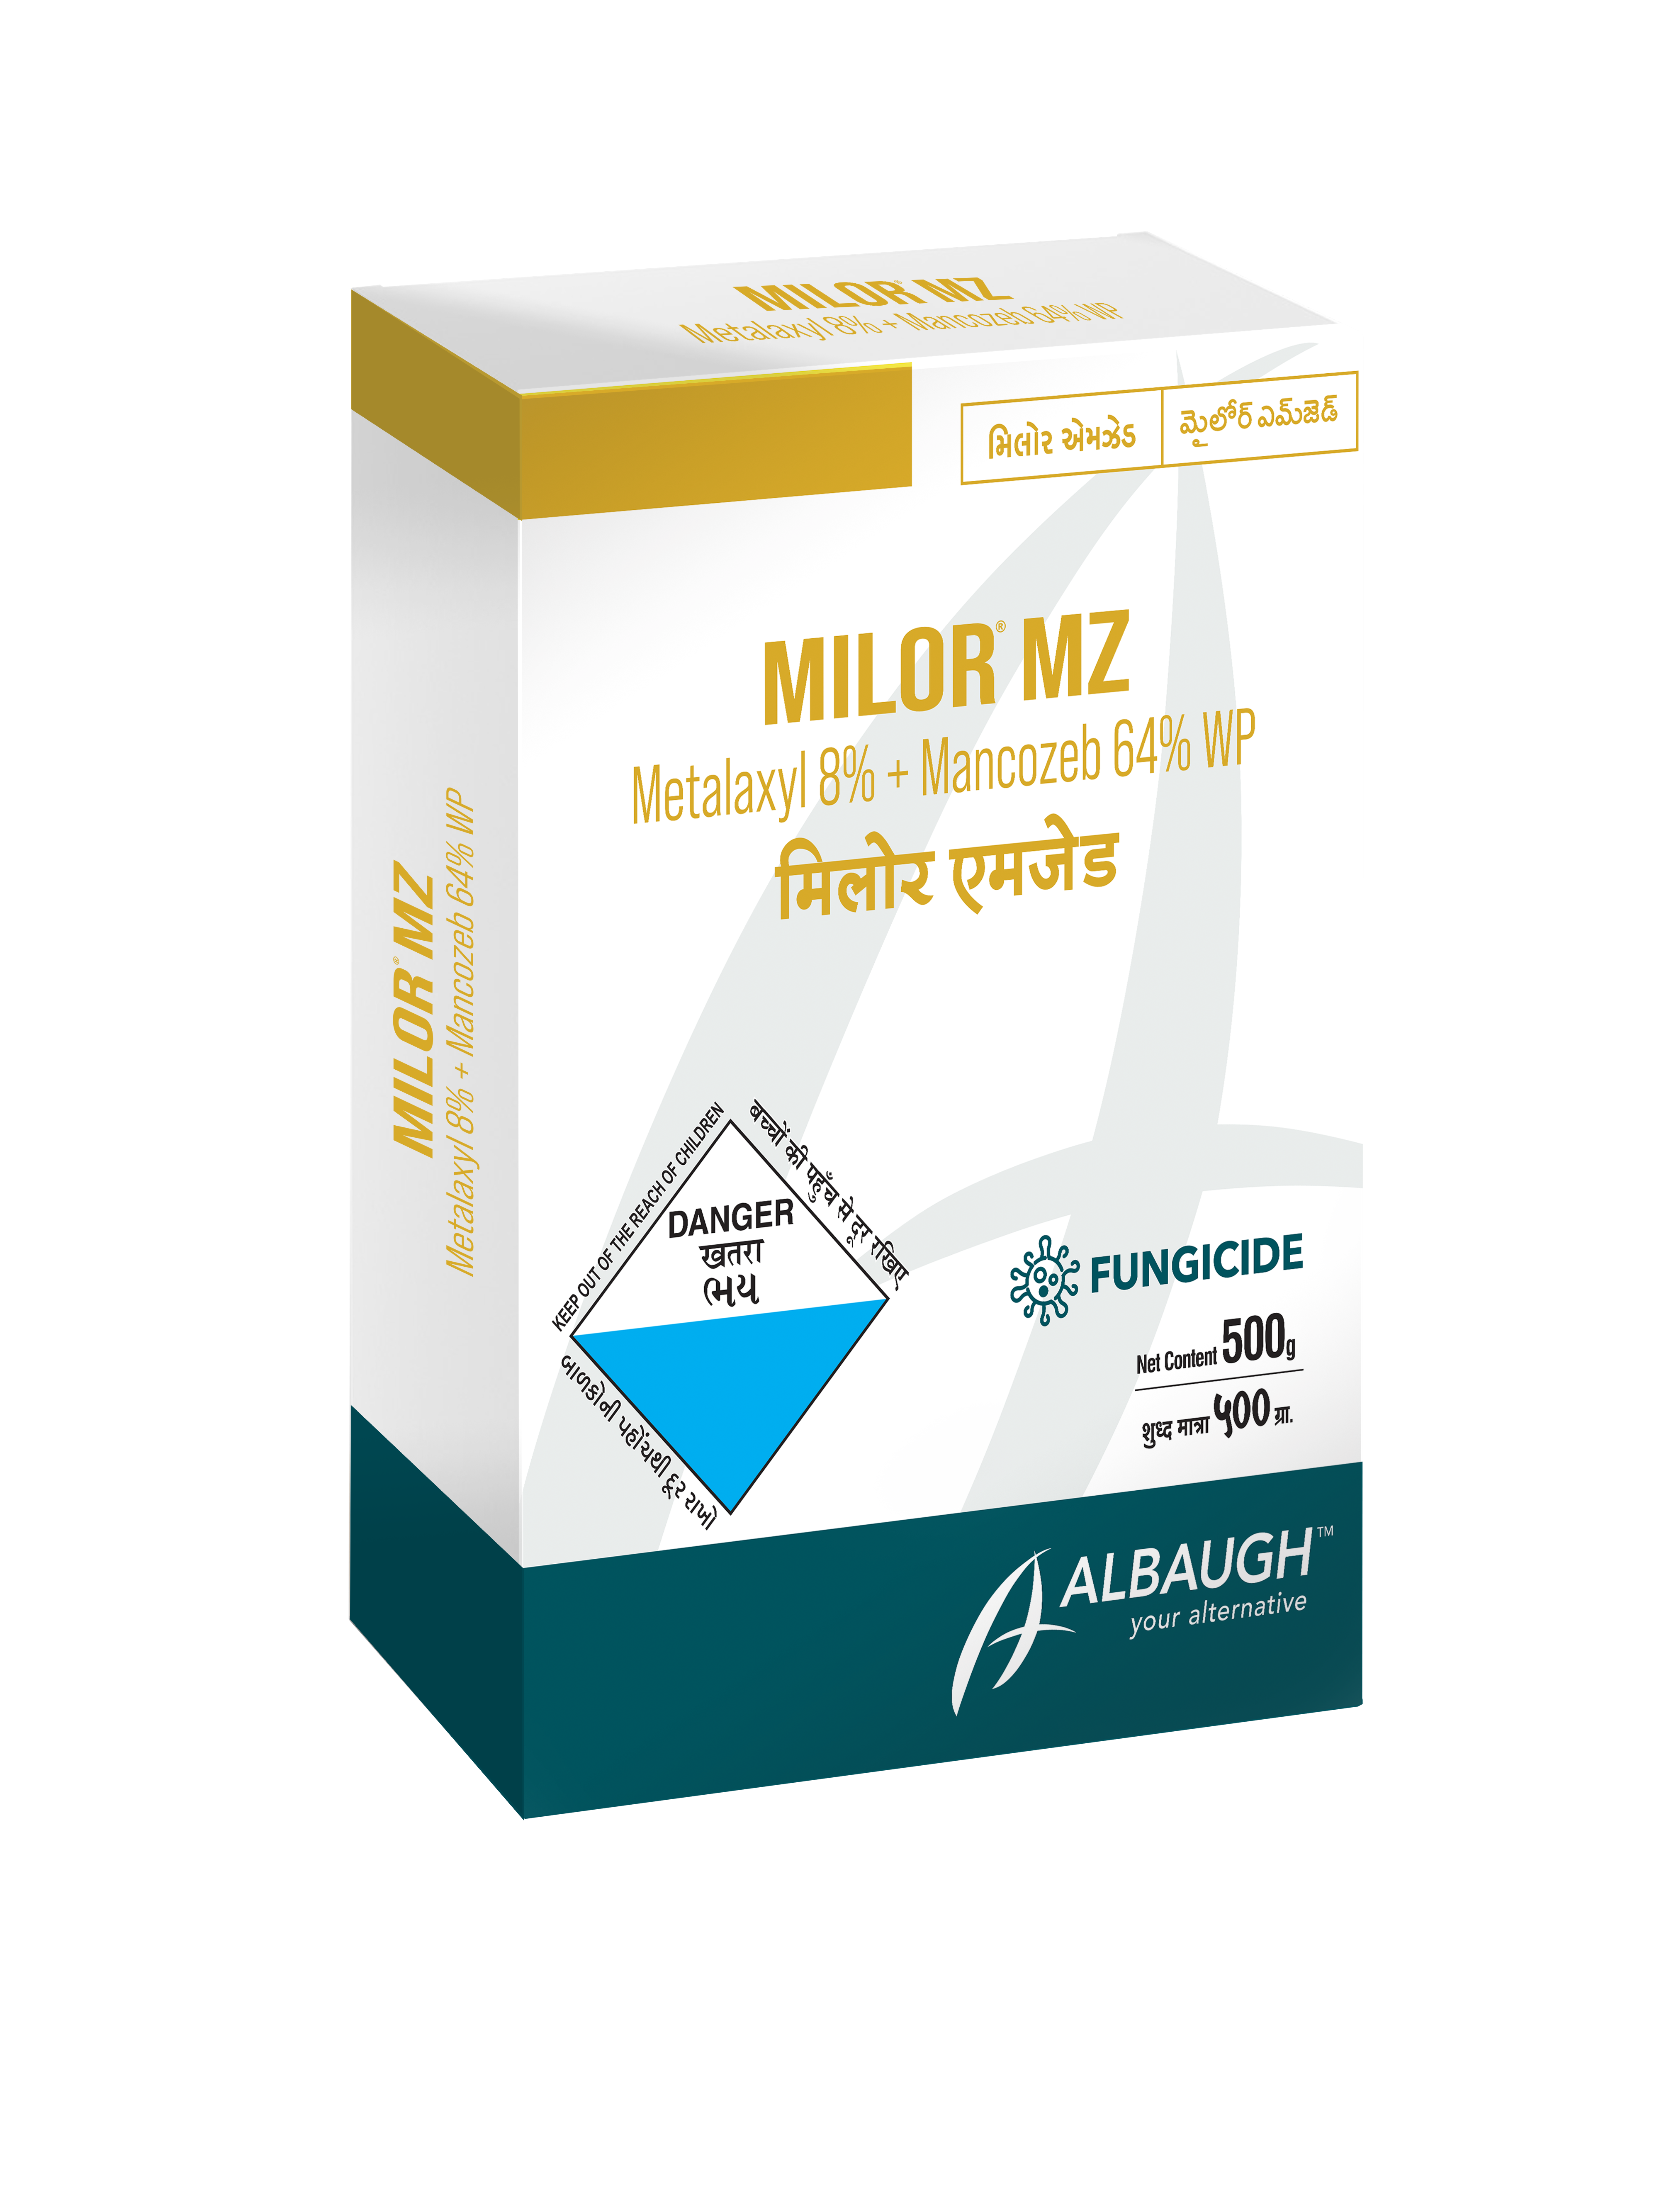 Milor MZ: Metalaxyl 8% + Mancozeb 64% WP